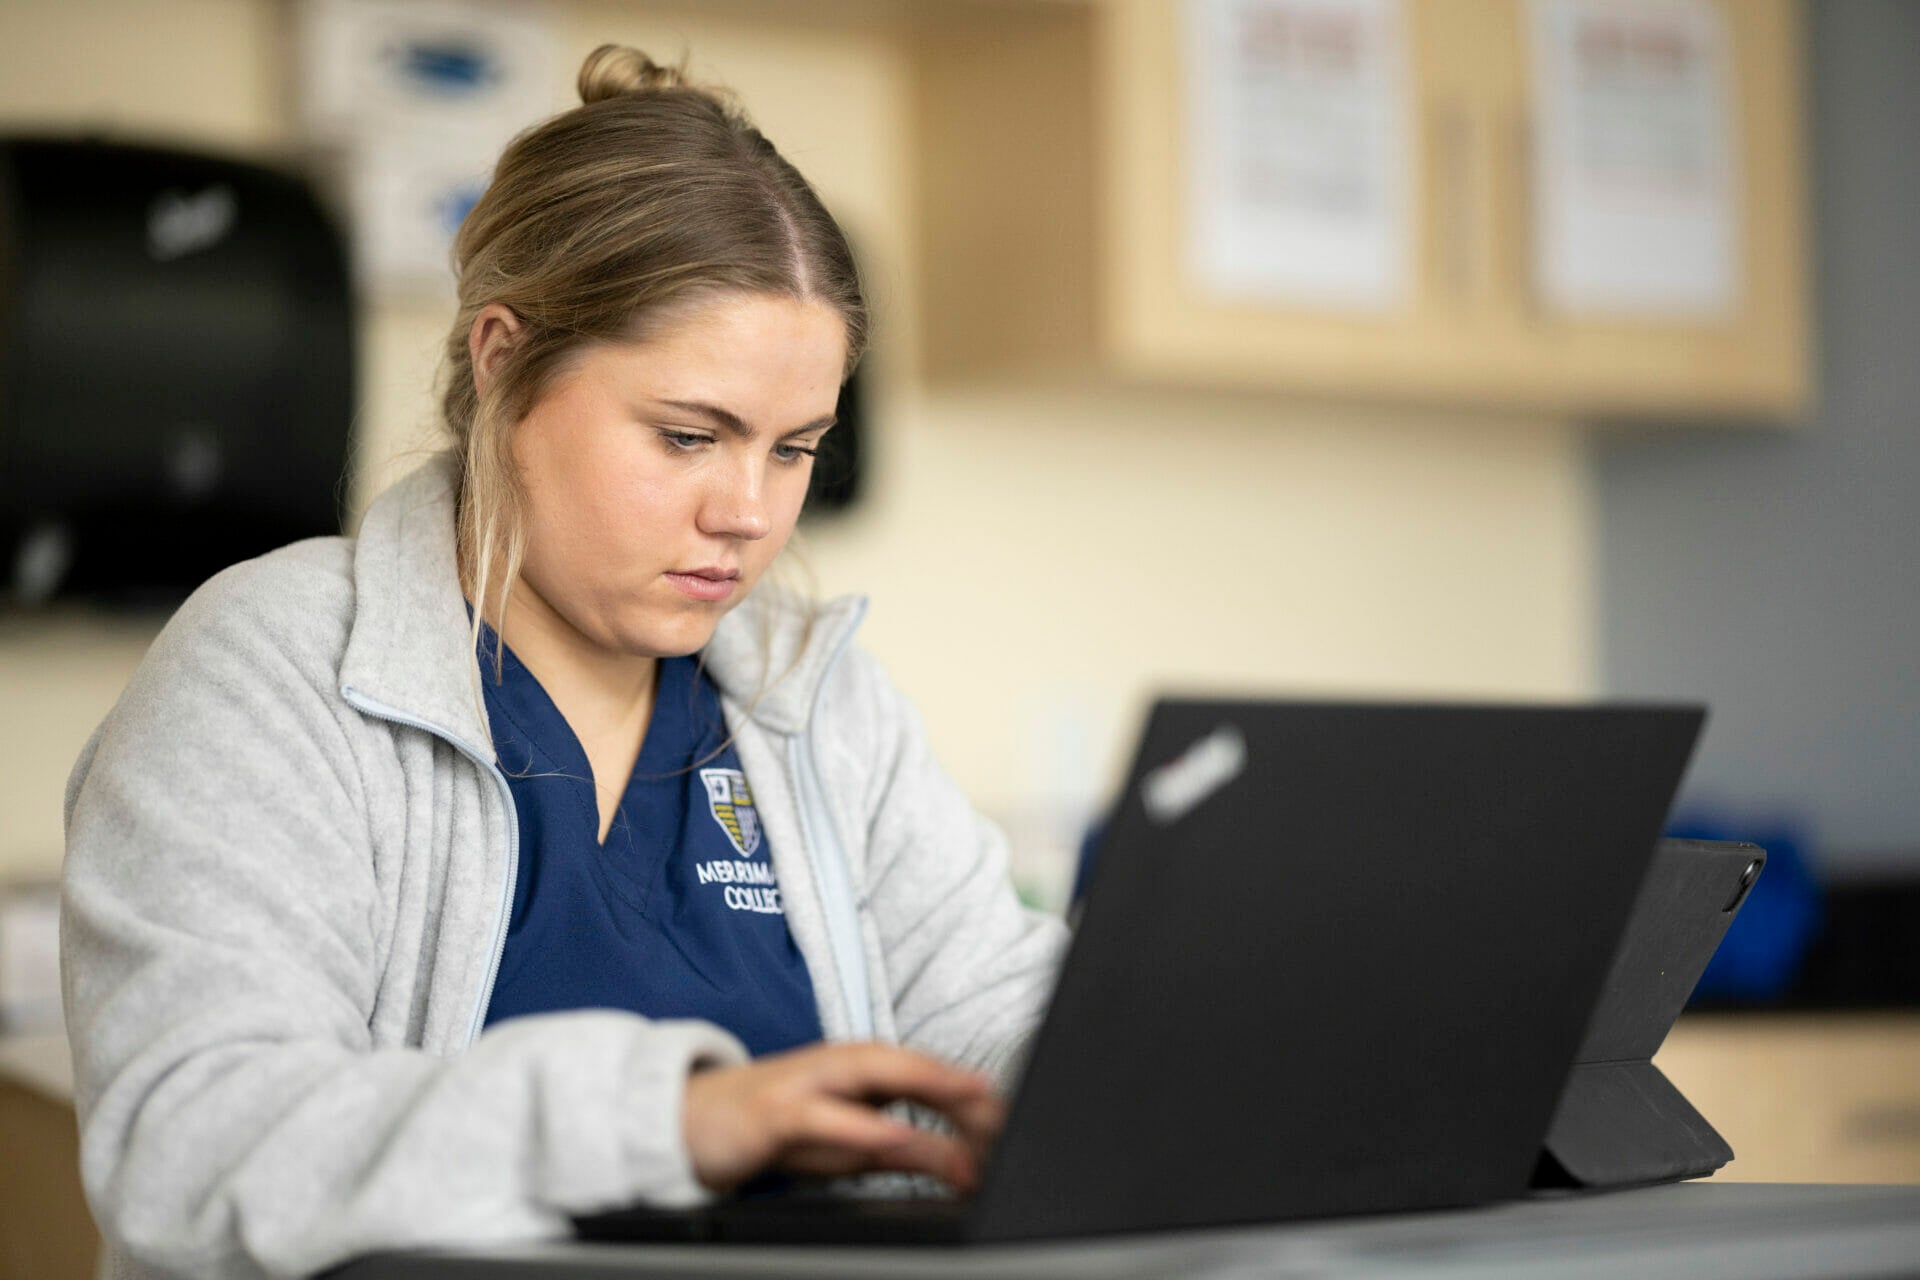 Nursing student researching on laptop.